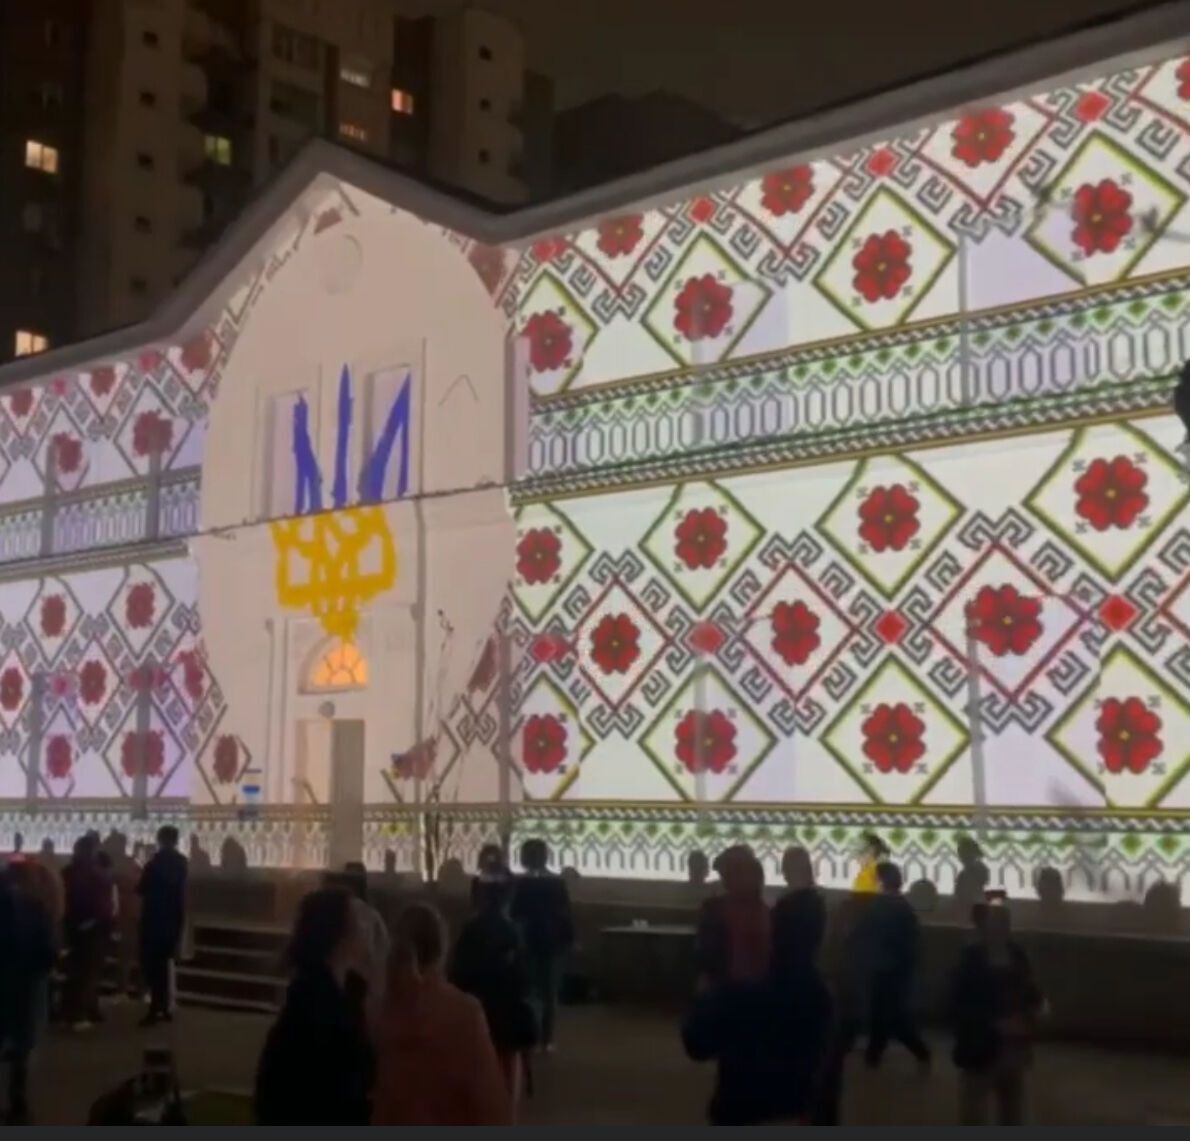 В Казахстане устроили лазерное шоу в знак поддержки Украины. Видео